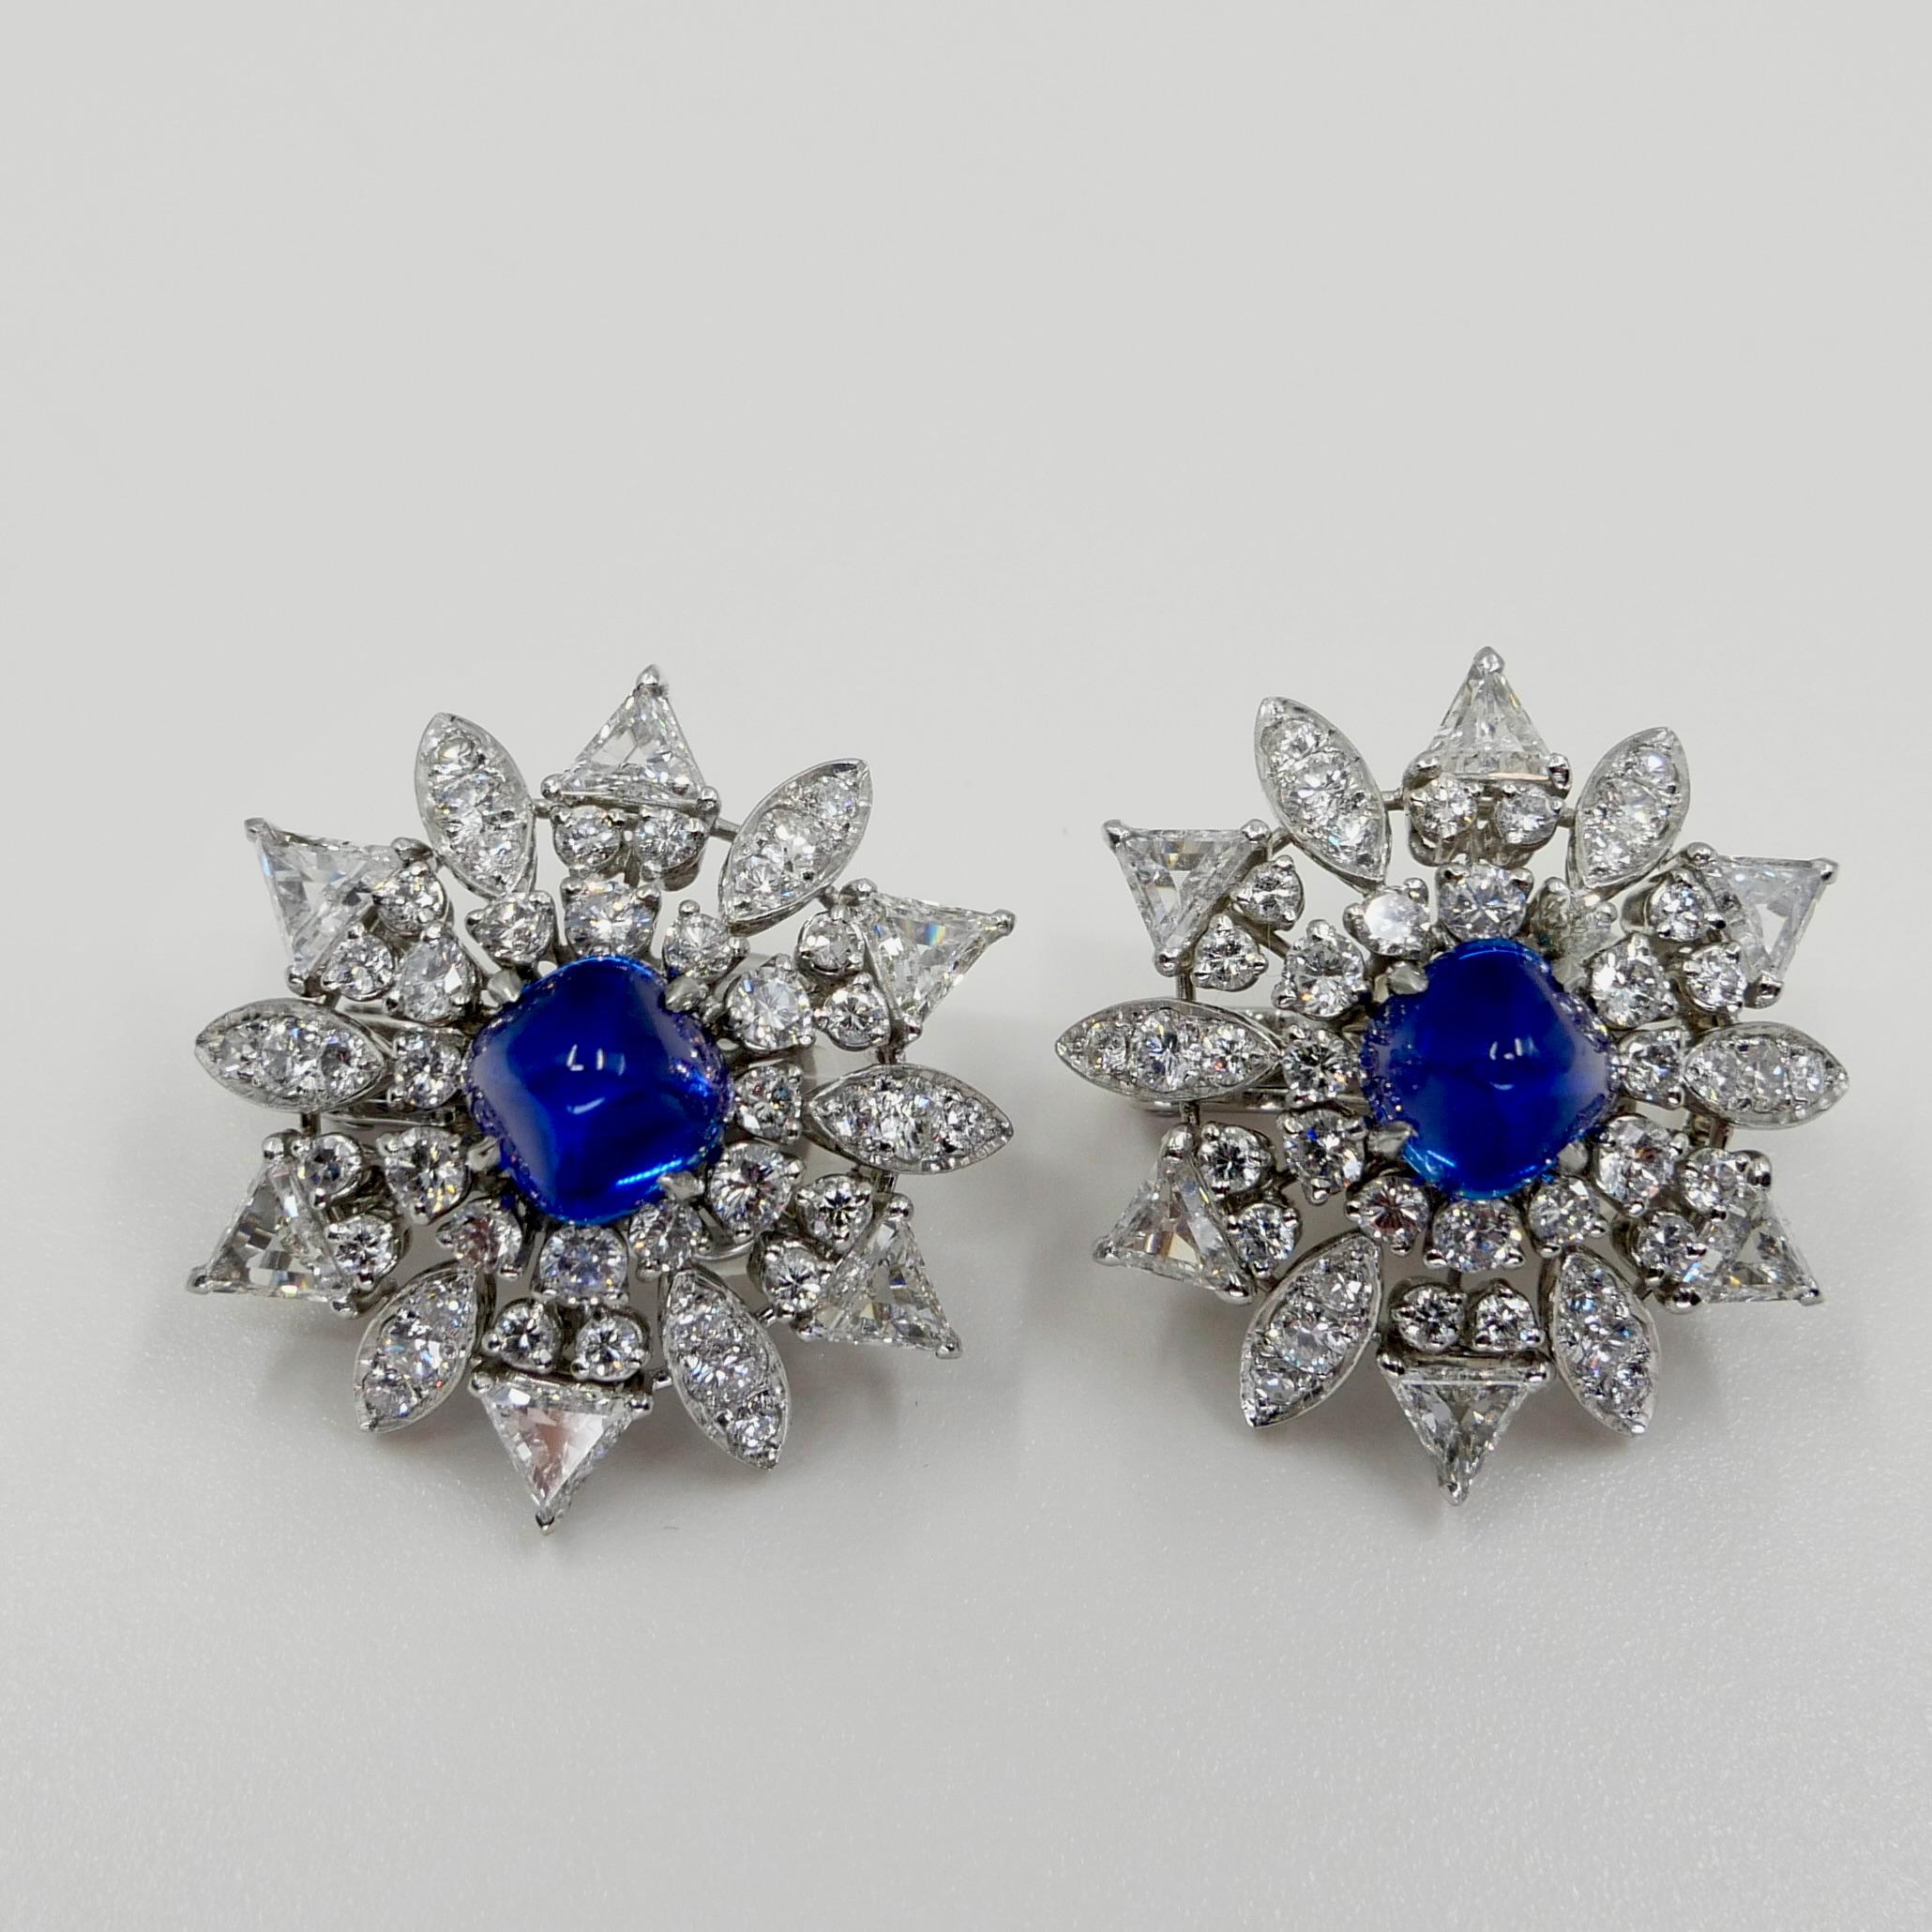 Certified Kashmir Sapphire No Heat Diamond Cluster Earrings, Cornflower Blue 5